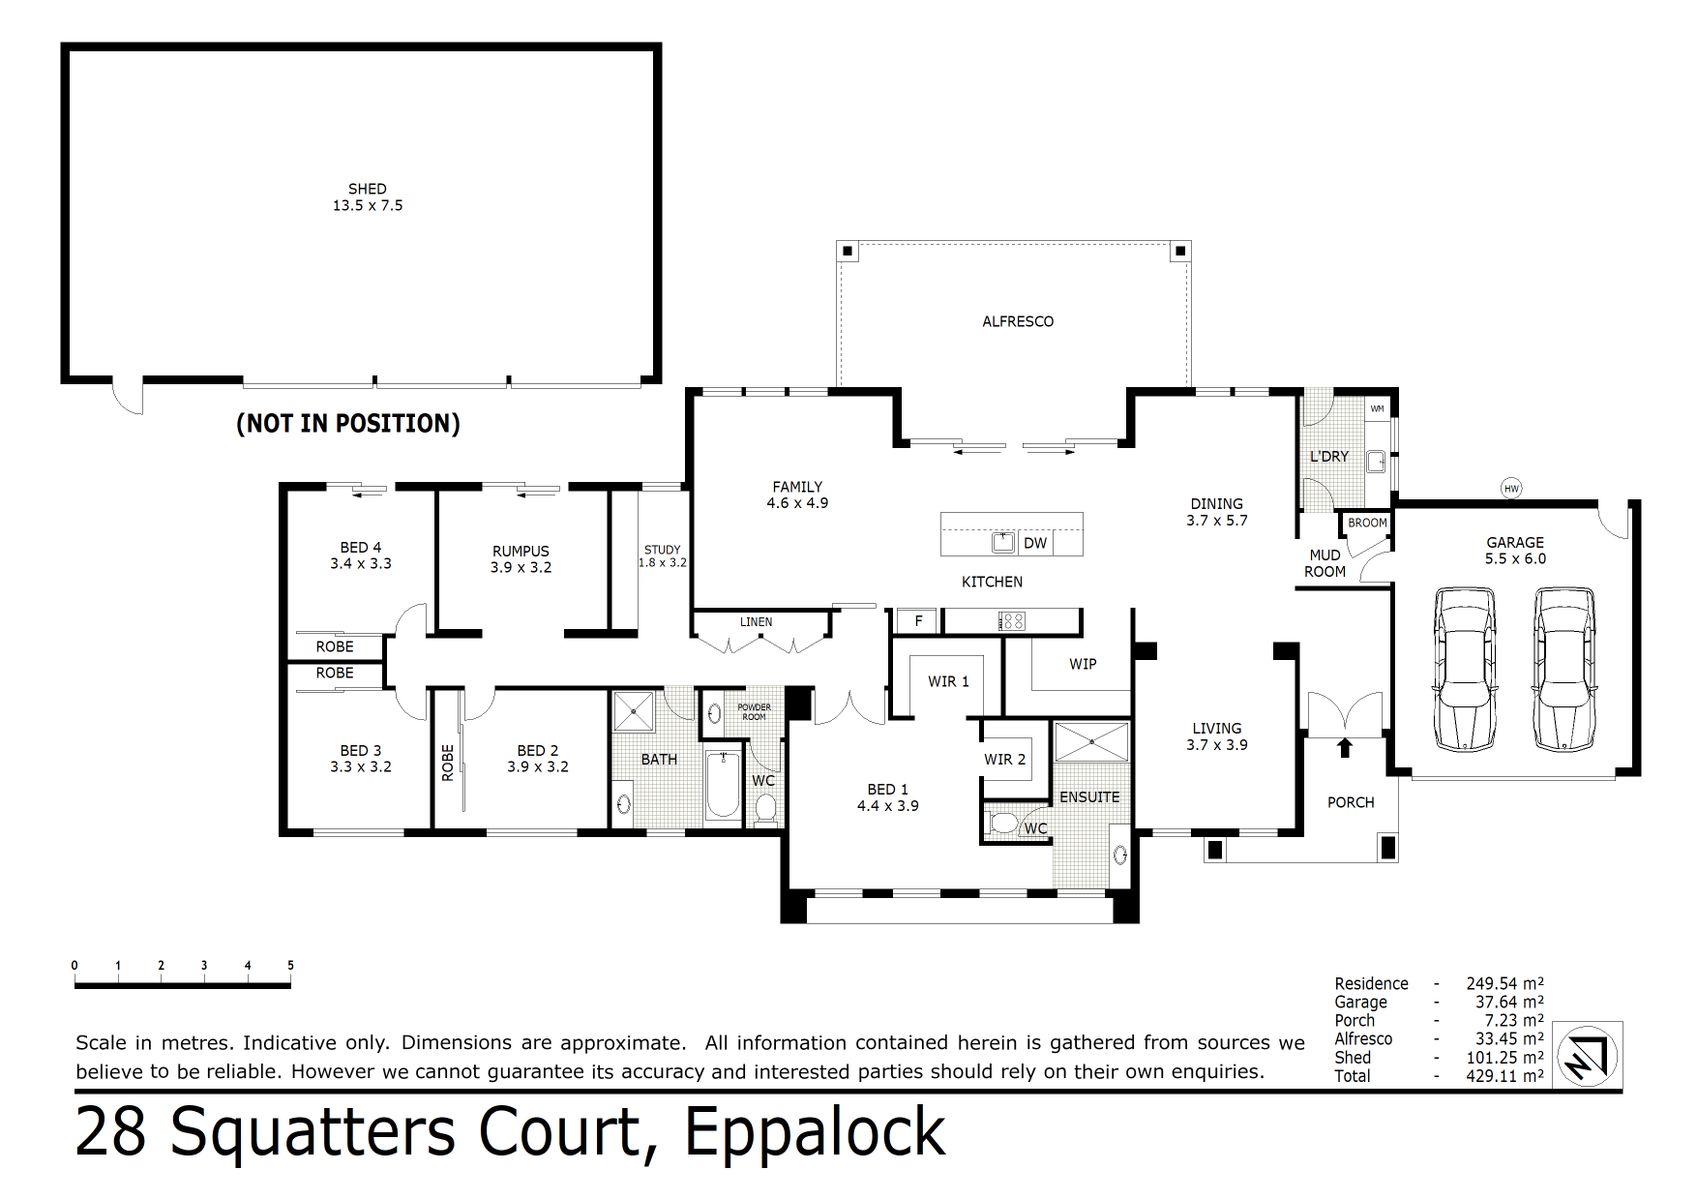 28 Squatters Court Eppalock (16 JAN 2023) 287sqm